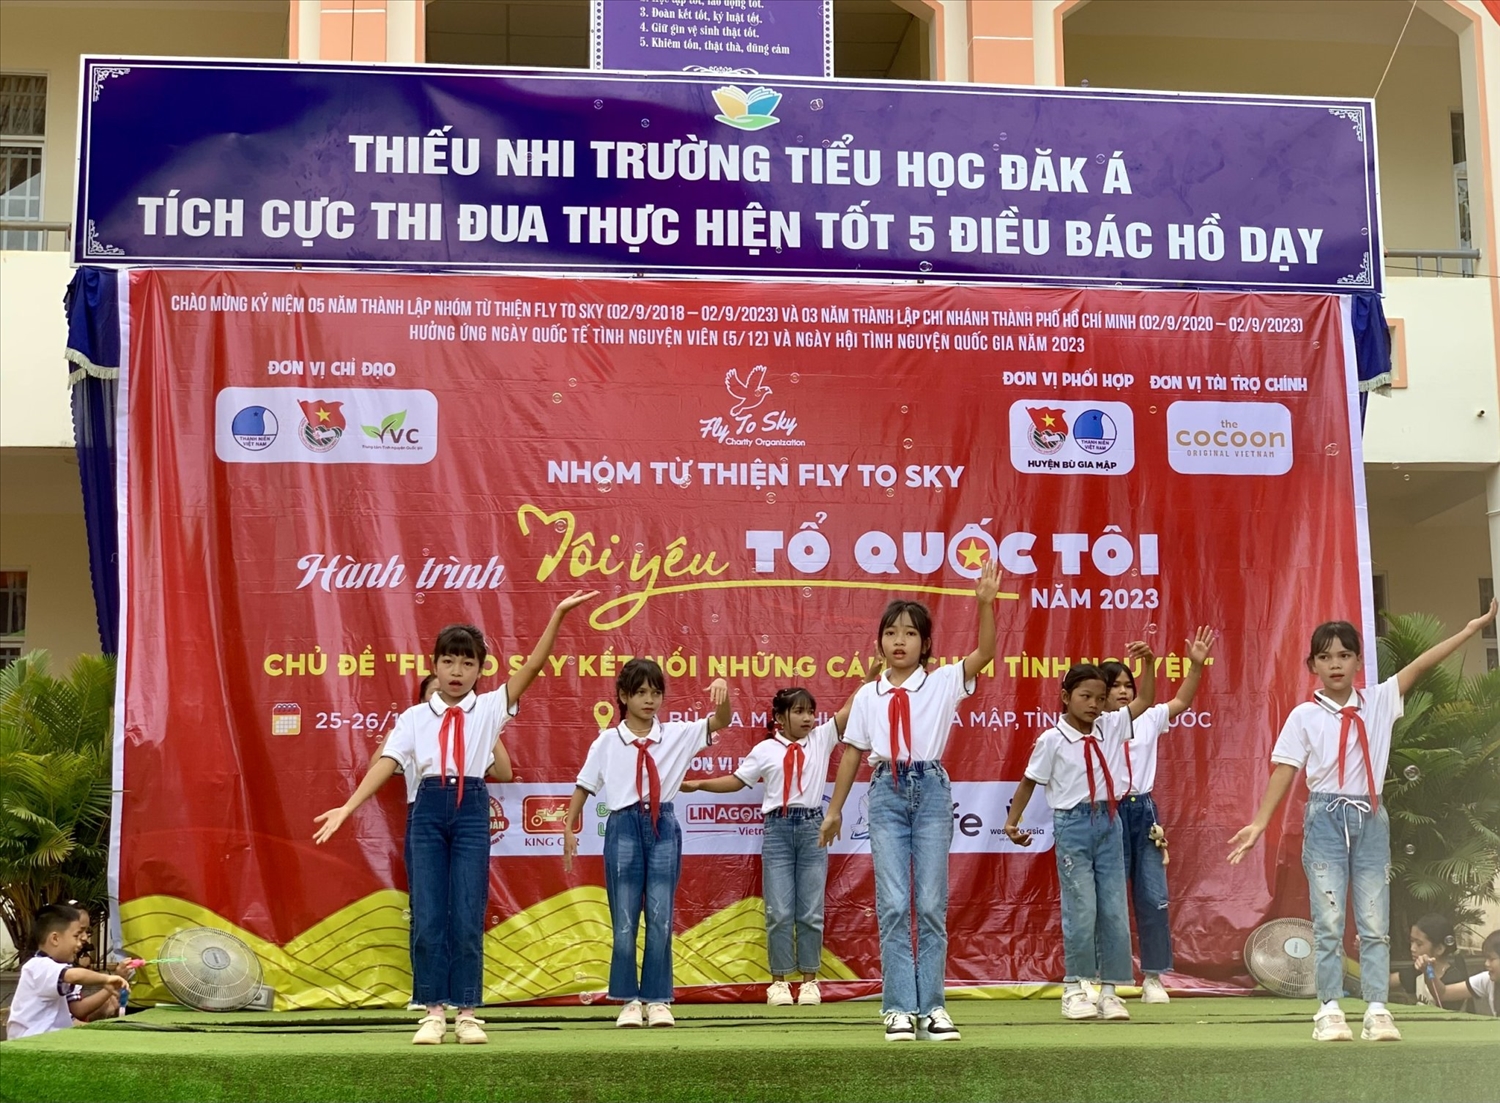 Tiết mục văn nghệ chào mừng đến từ các bạn học sinh Trường Tiểu học Đăk Á, xã Bù Gia Mập, huyện Bù Gia Mập, tỉnh Bình Phước